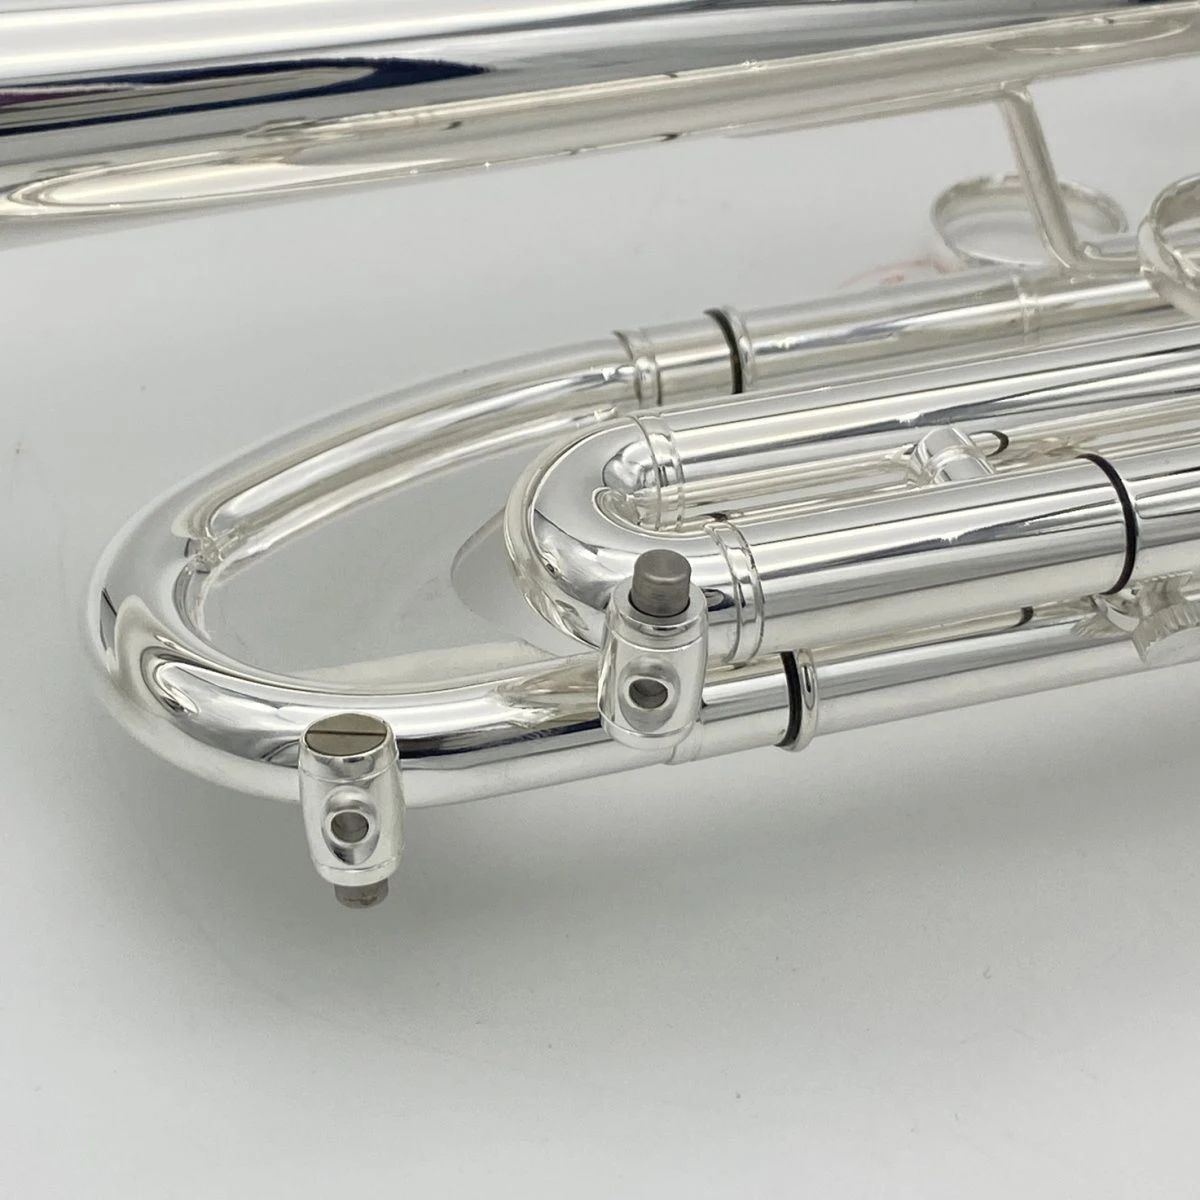 ヨーロッパのヨーロッパの新しい銀メッキのBチューンの悪化したトランペット楽器の初心者が試験レベルの真鍮のプロのトランペットをプレイする